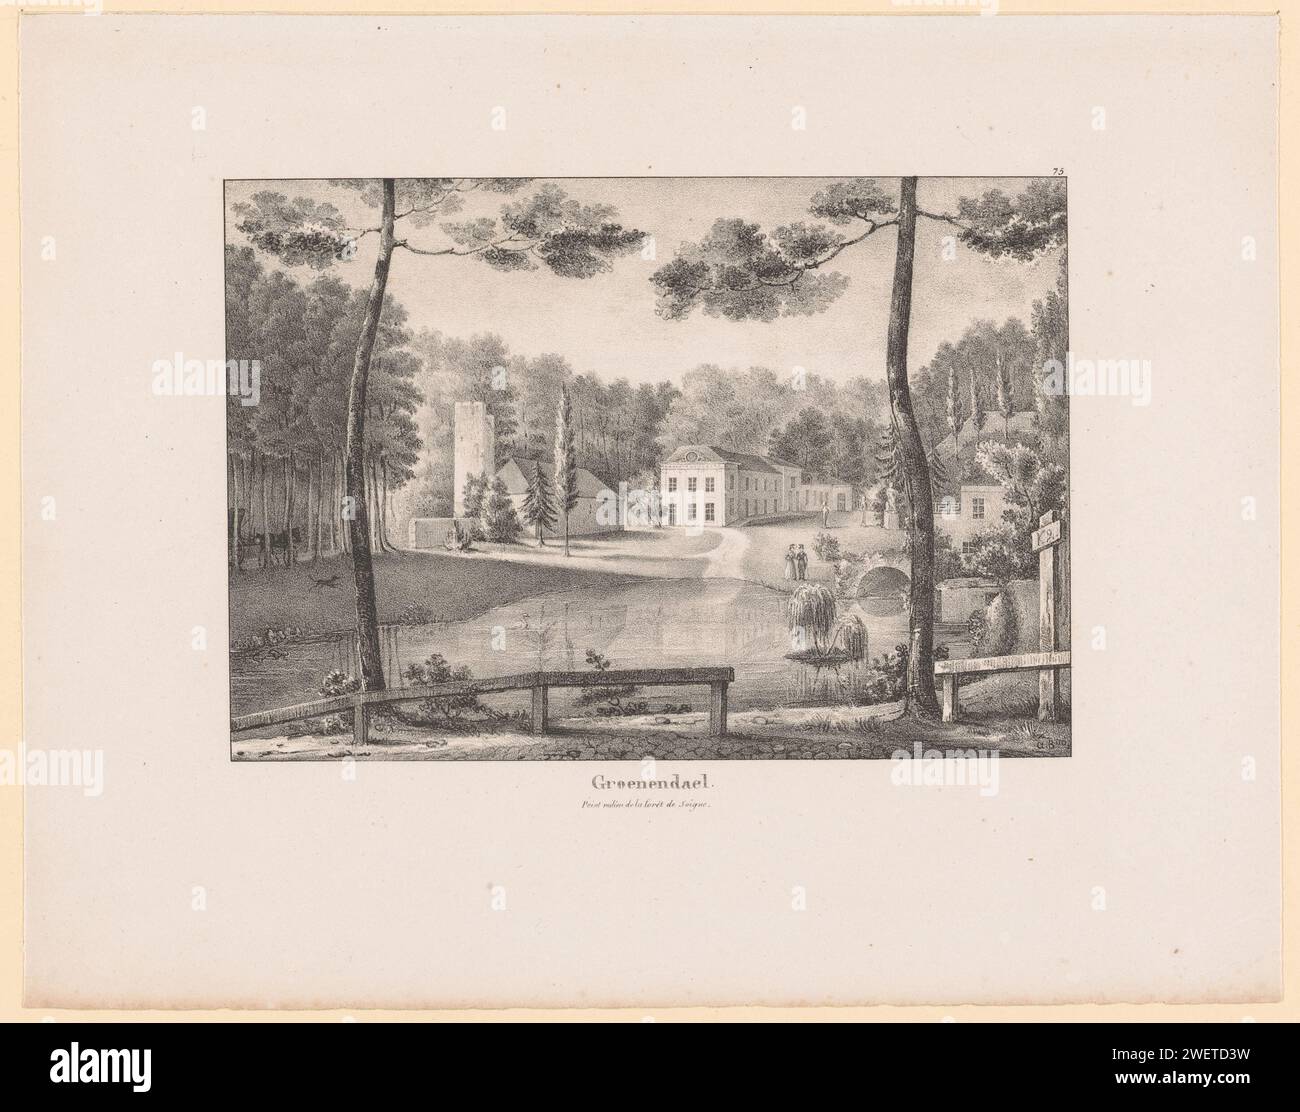 Vista del priorato di Groenendaal nella foresta di Sonian, anonimo, 1800 - 1899 carta stampata abbazia, monastero, convento  chiesa cattolica romana di Bruxelles Foto Stock